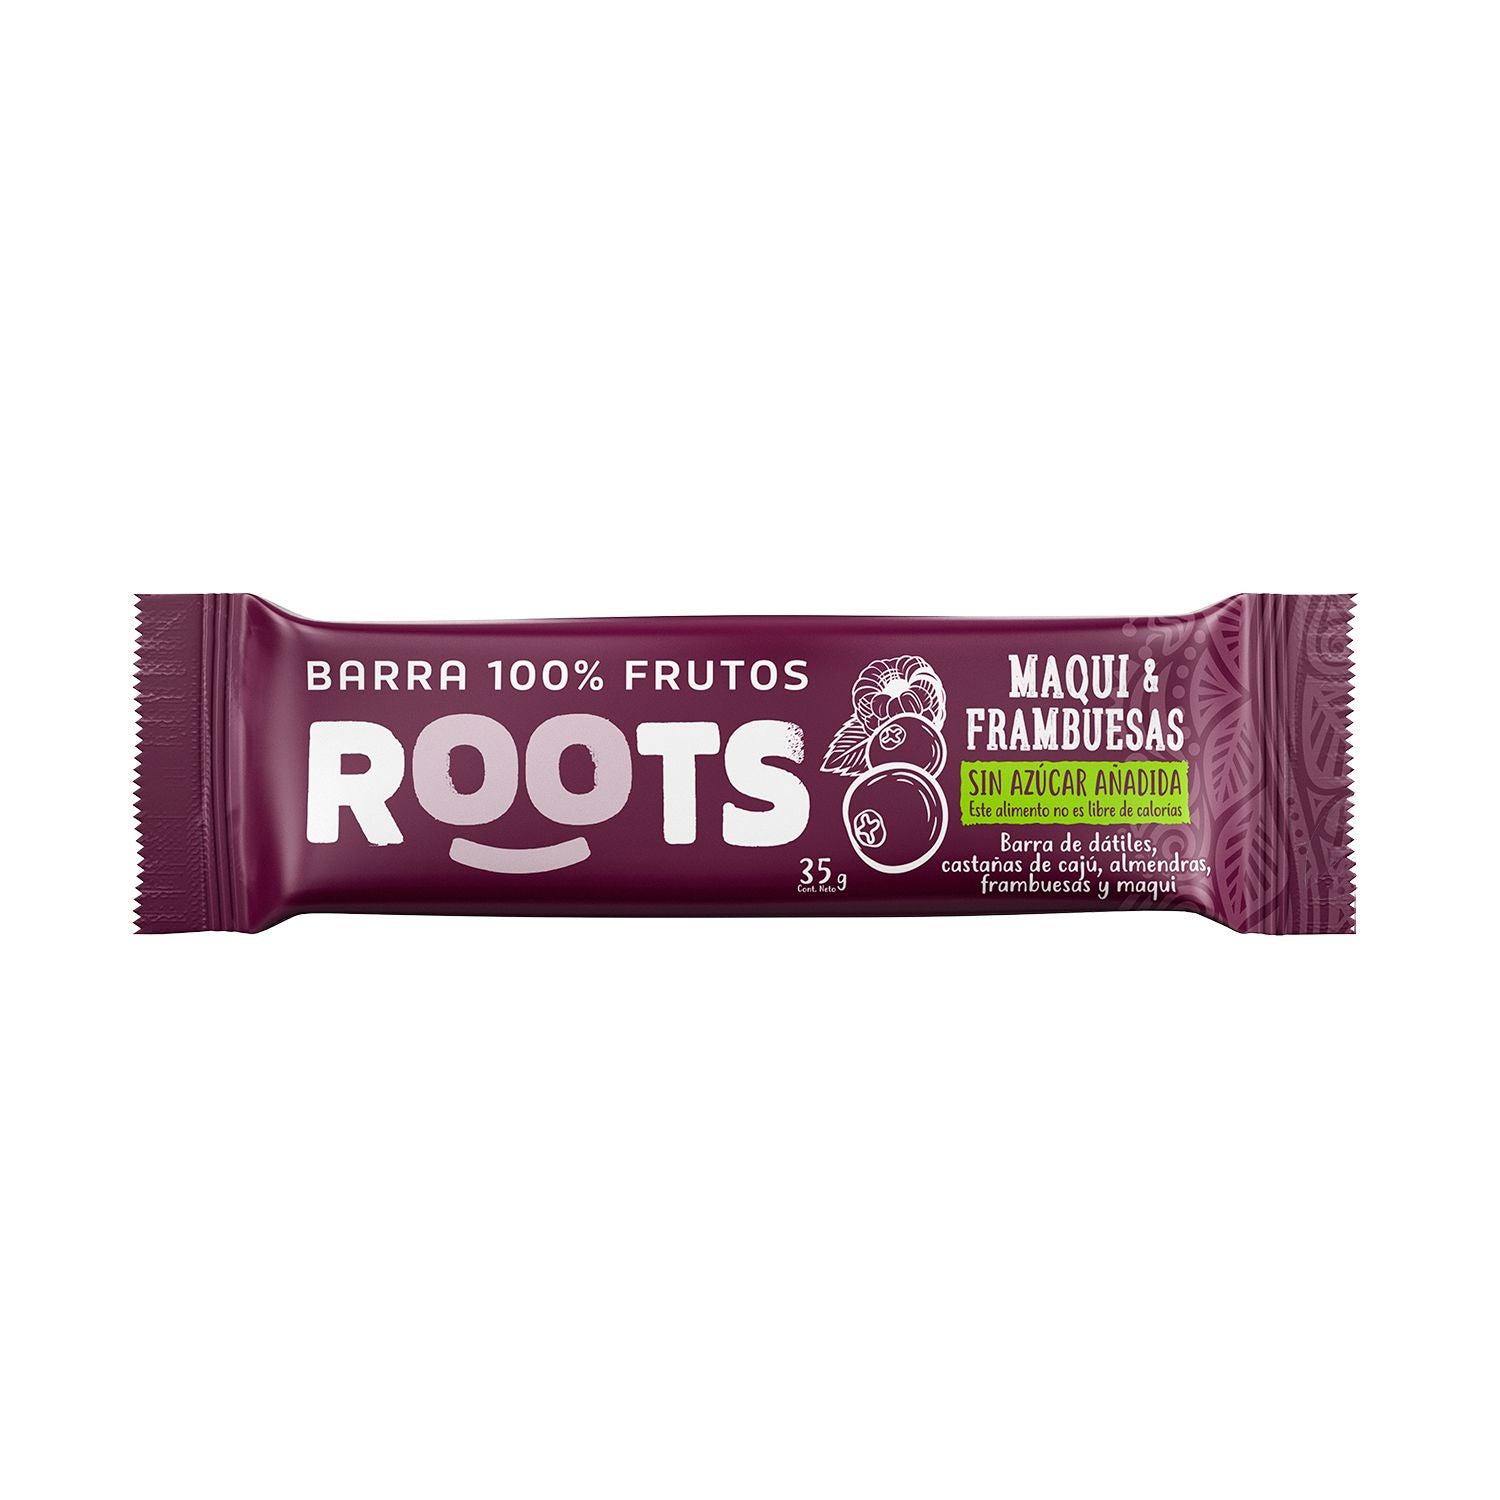 Barra 100% Frutos Roots Maqui Frambuesa 36 grs